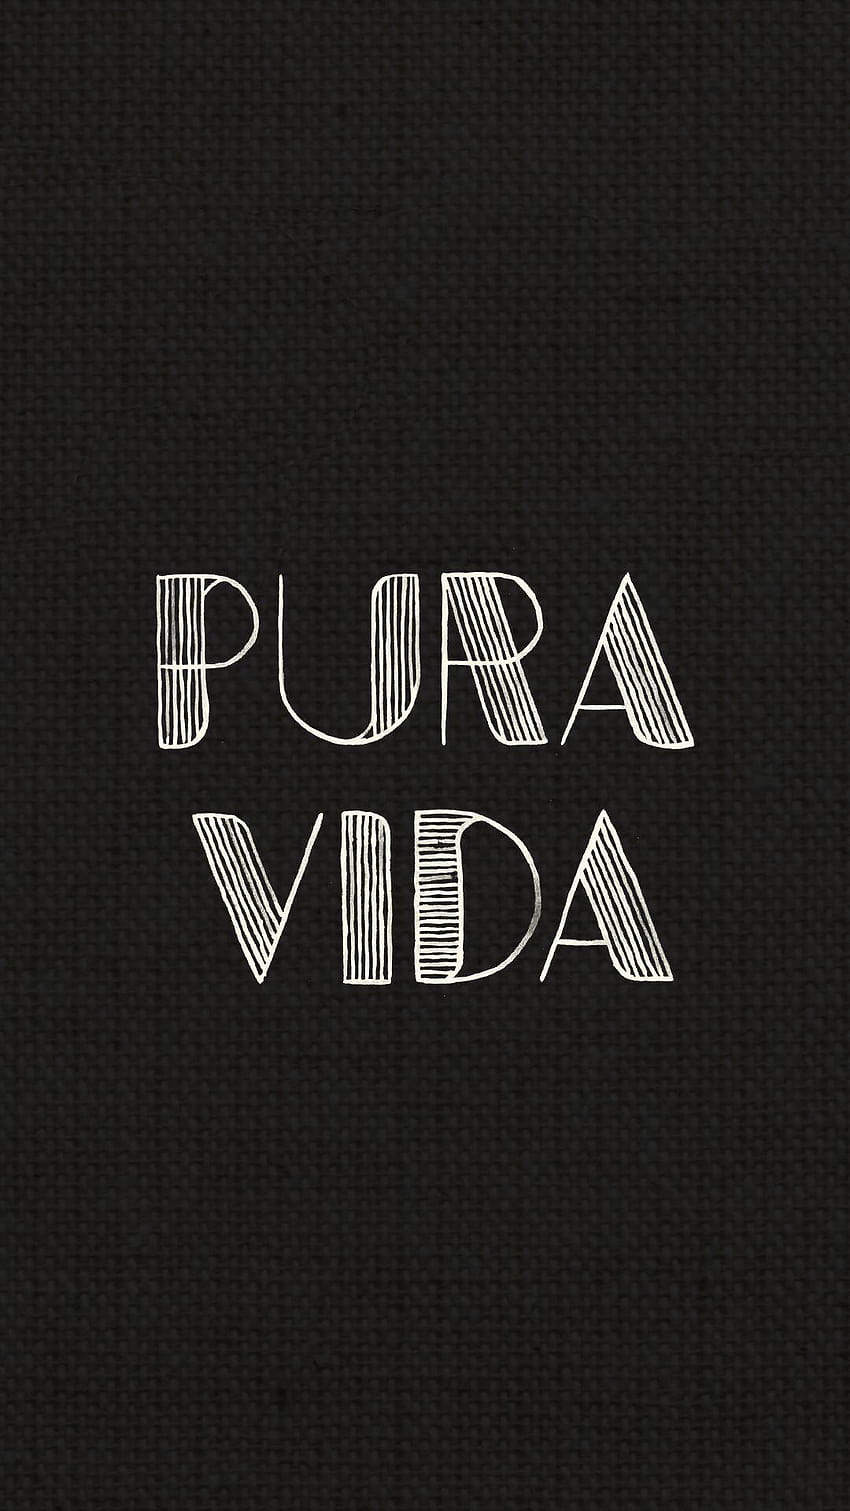 6 Positive Vibes, pura vida HD phone wallpaper